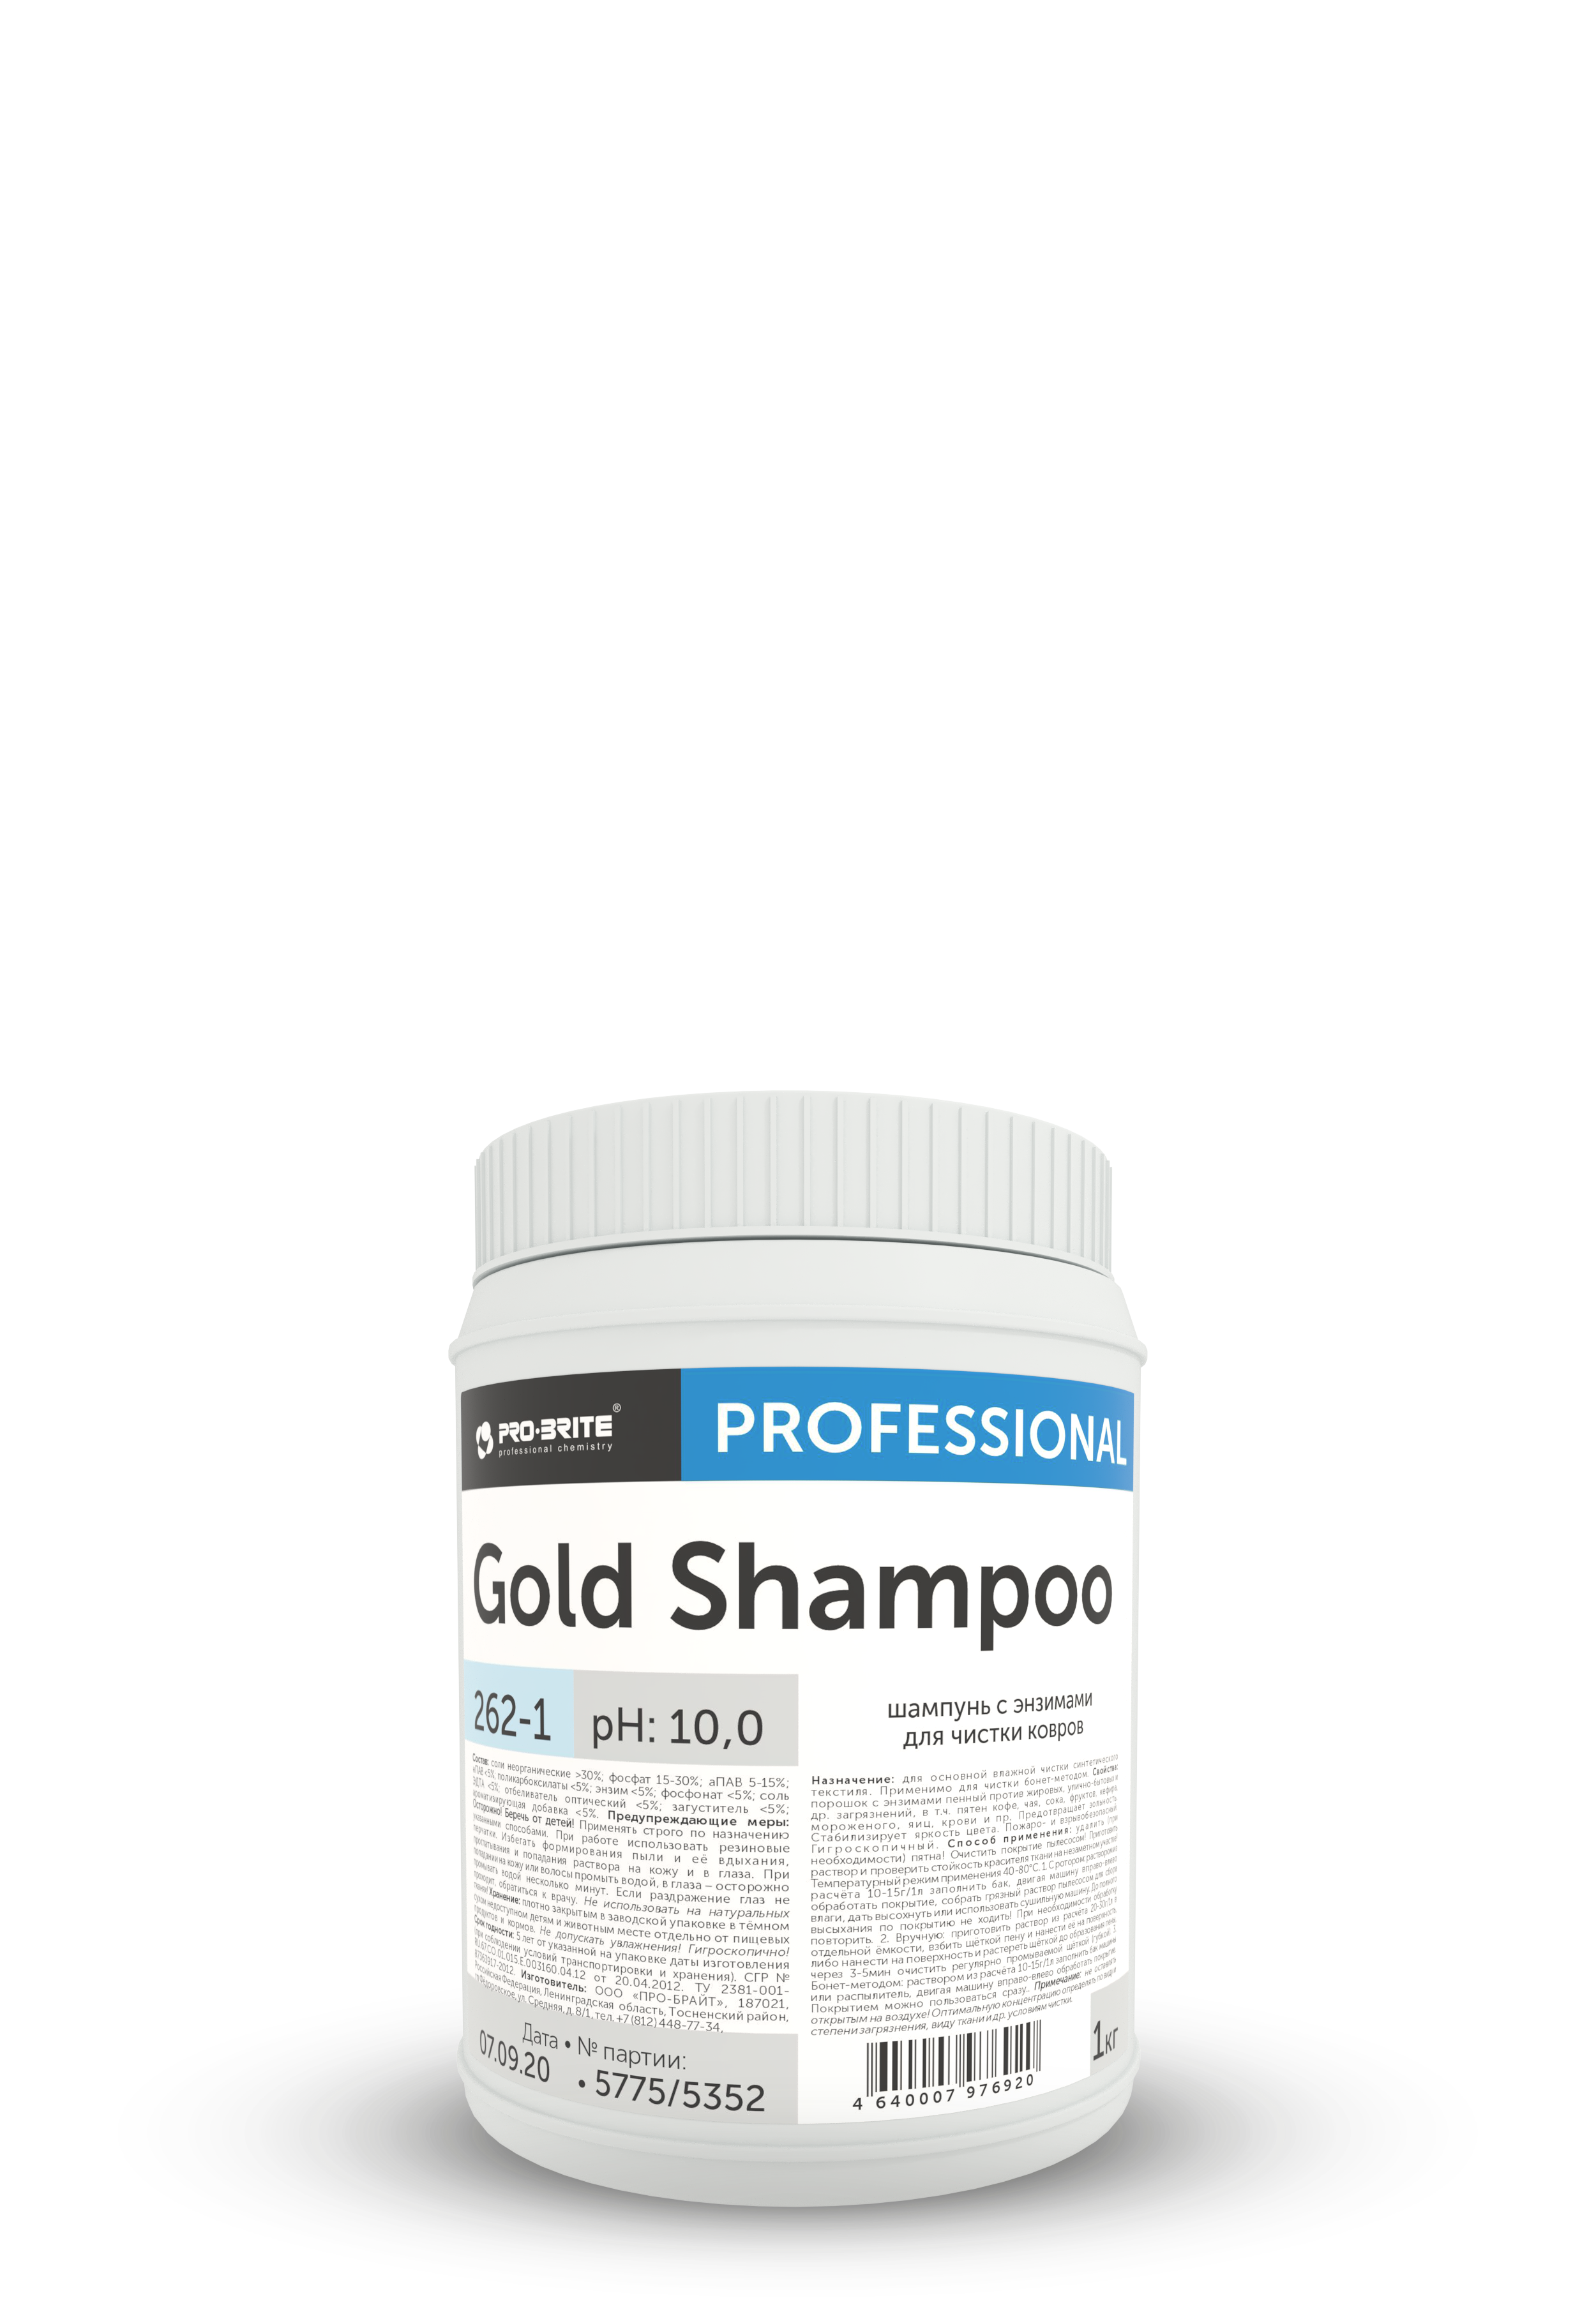 Gold Shampoo 1 кг, Шампунь с энзимами для чистки ковров. PRO-BRITE